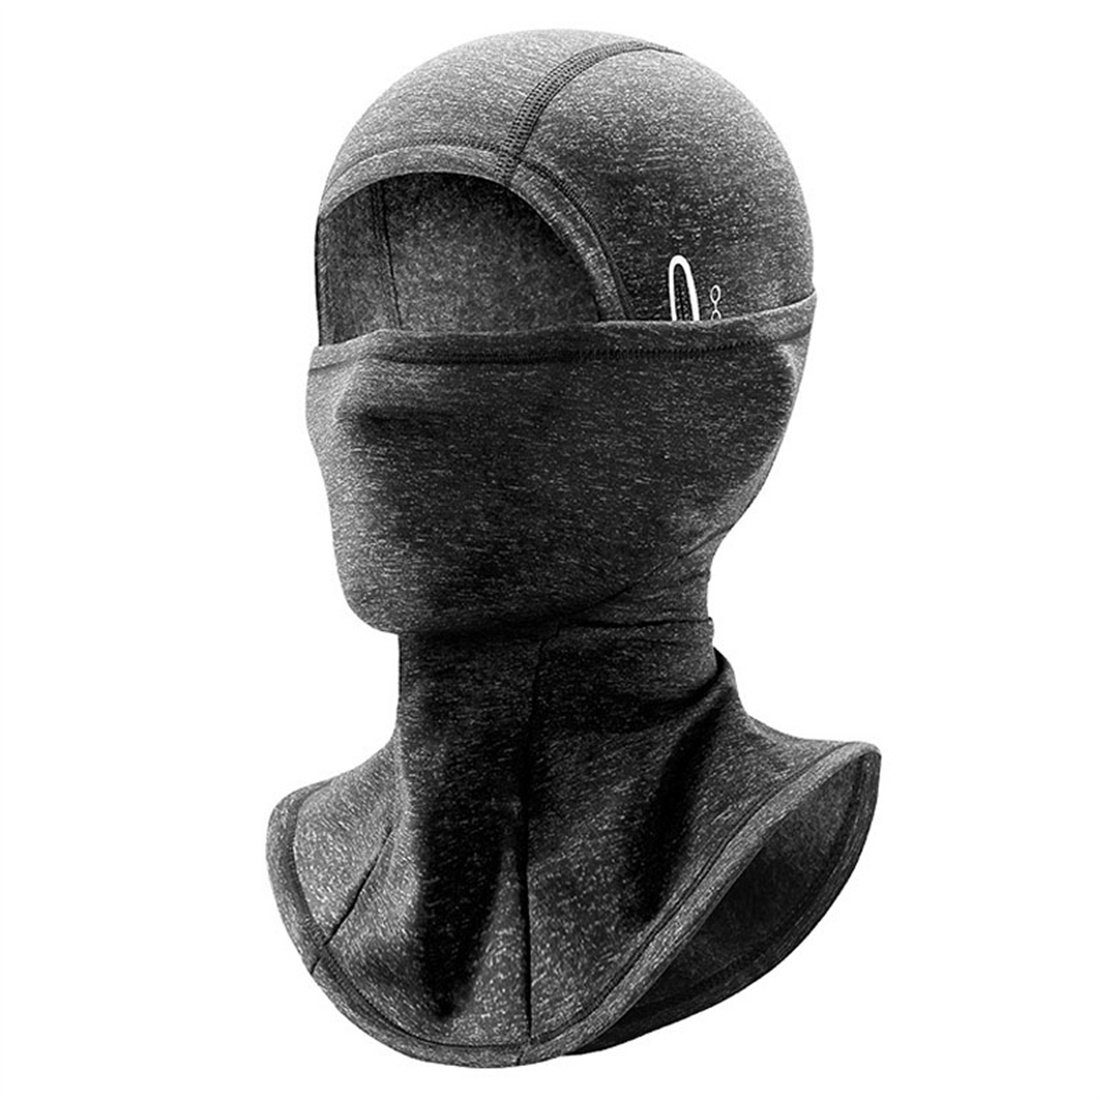 dunkelgrau gepolsterte DÖRÖY für Kopfbedeckungen Wintersport, den Sturmhaube Warme Skimasken